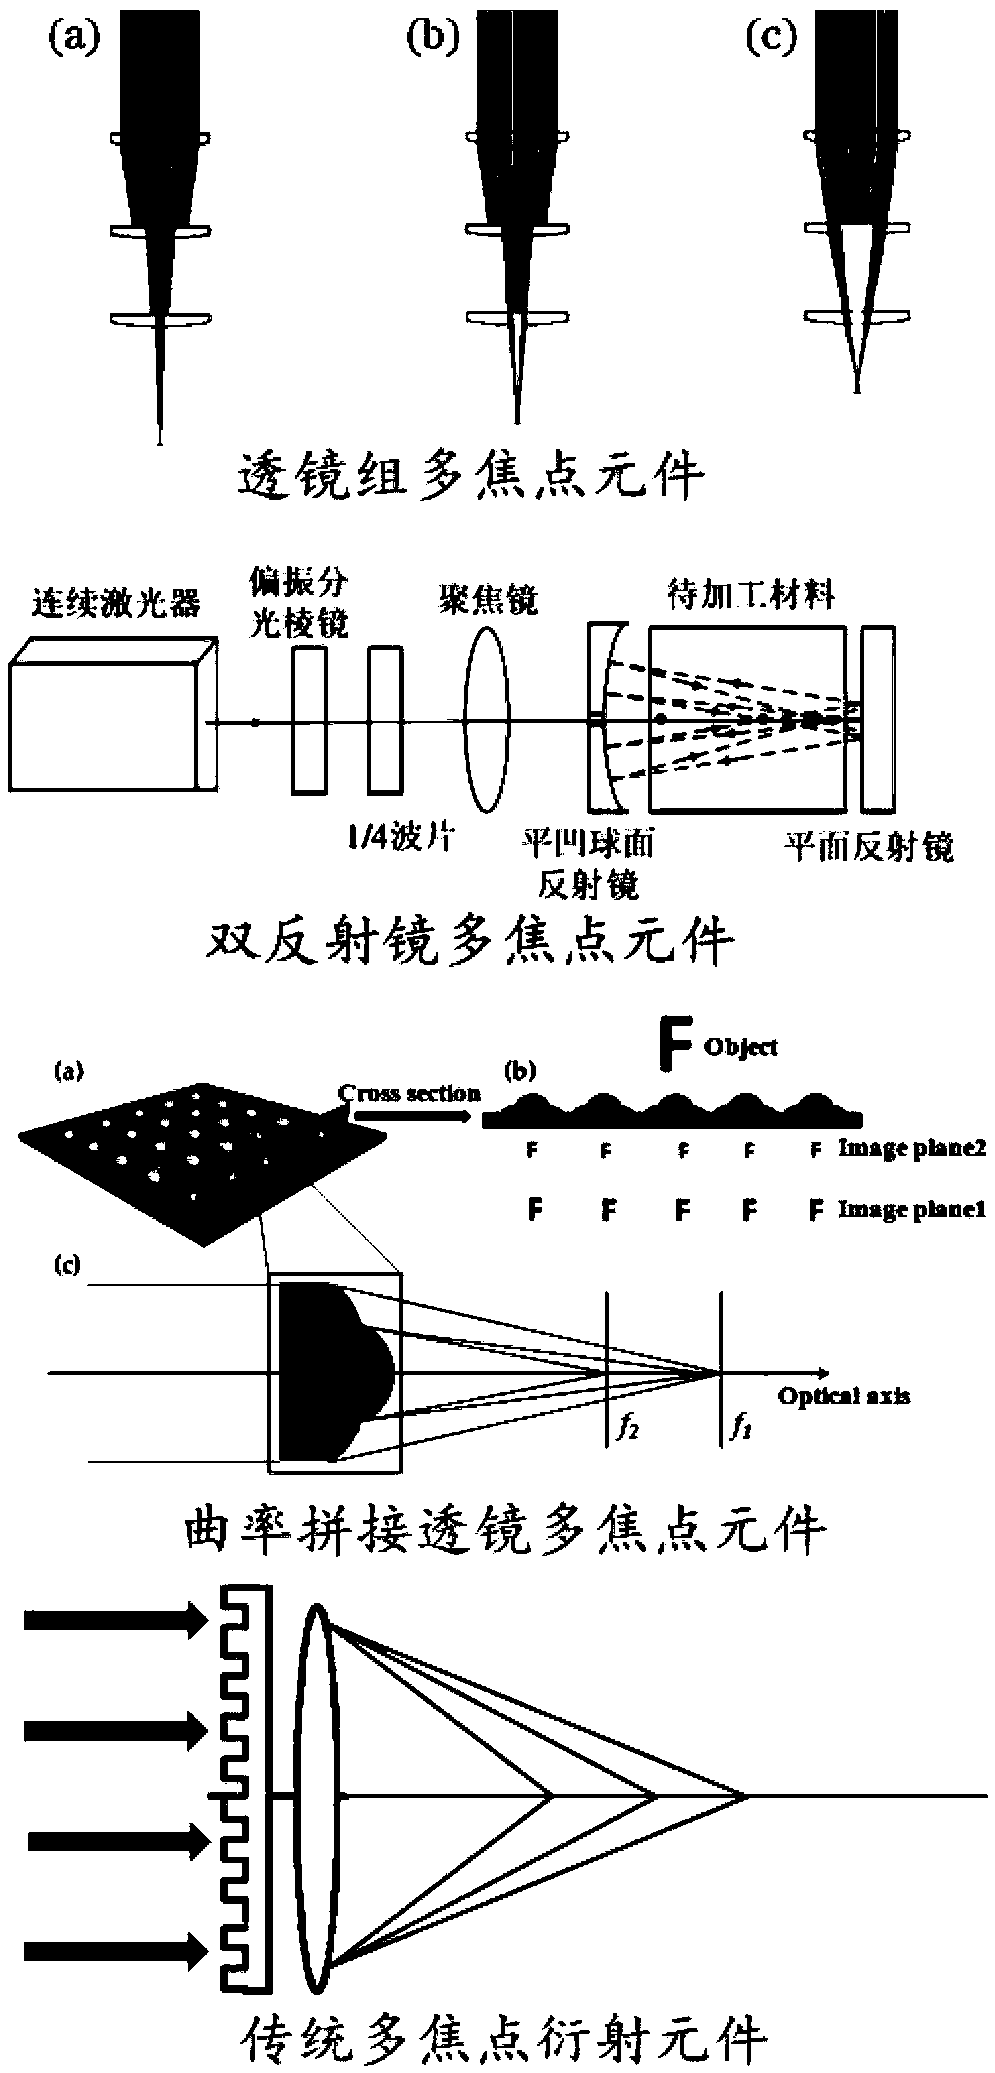 Preparation method of multi-focus diffraction element, and multi-focus diffraction element